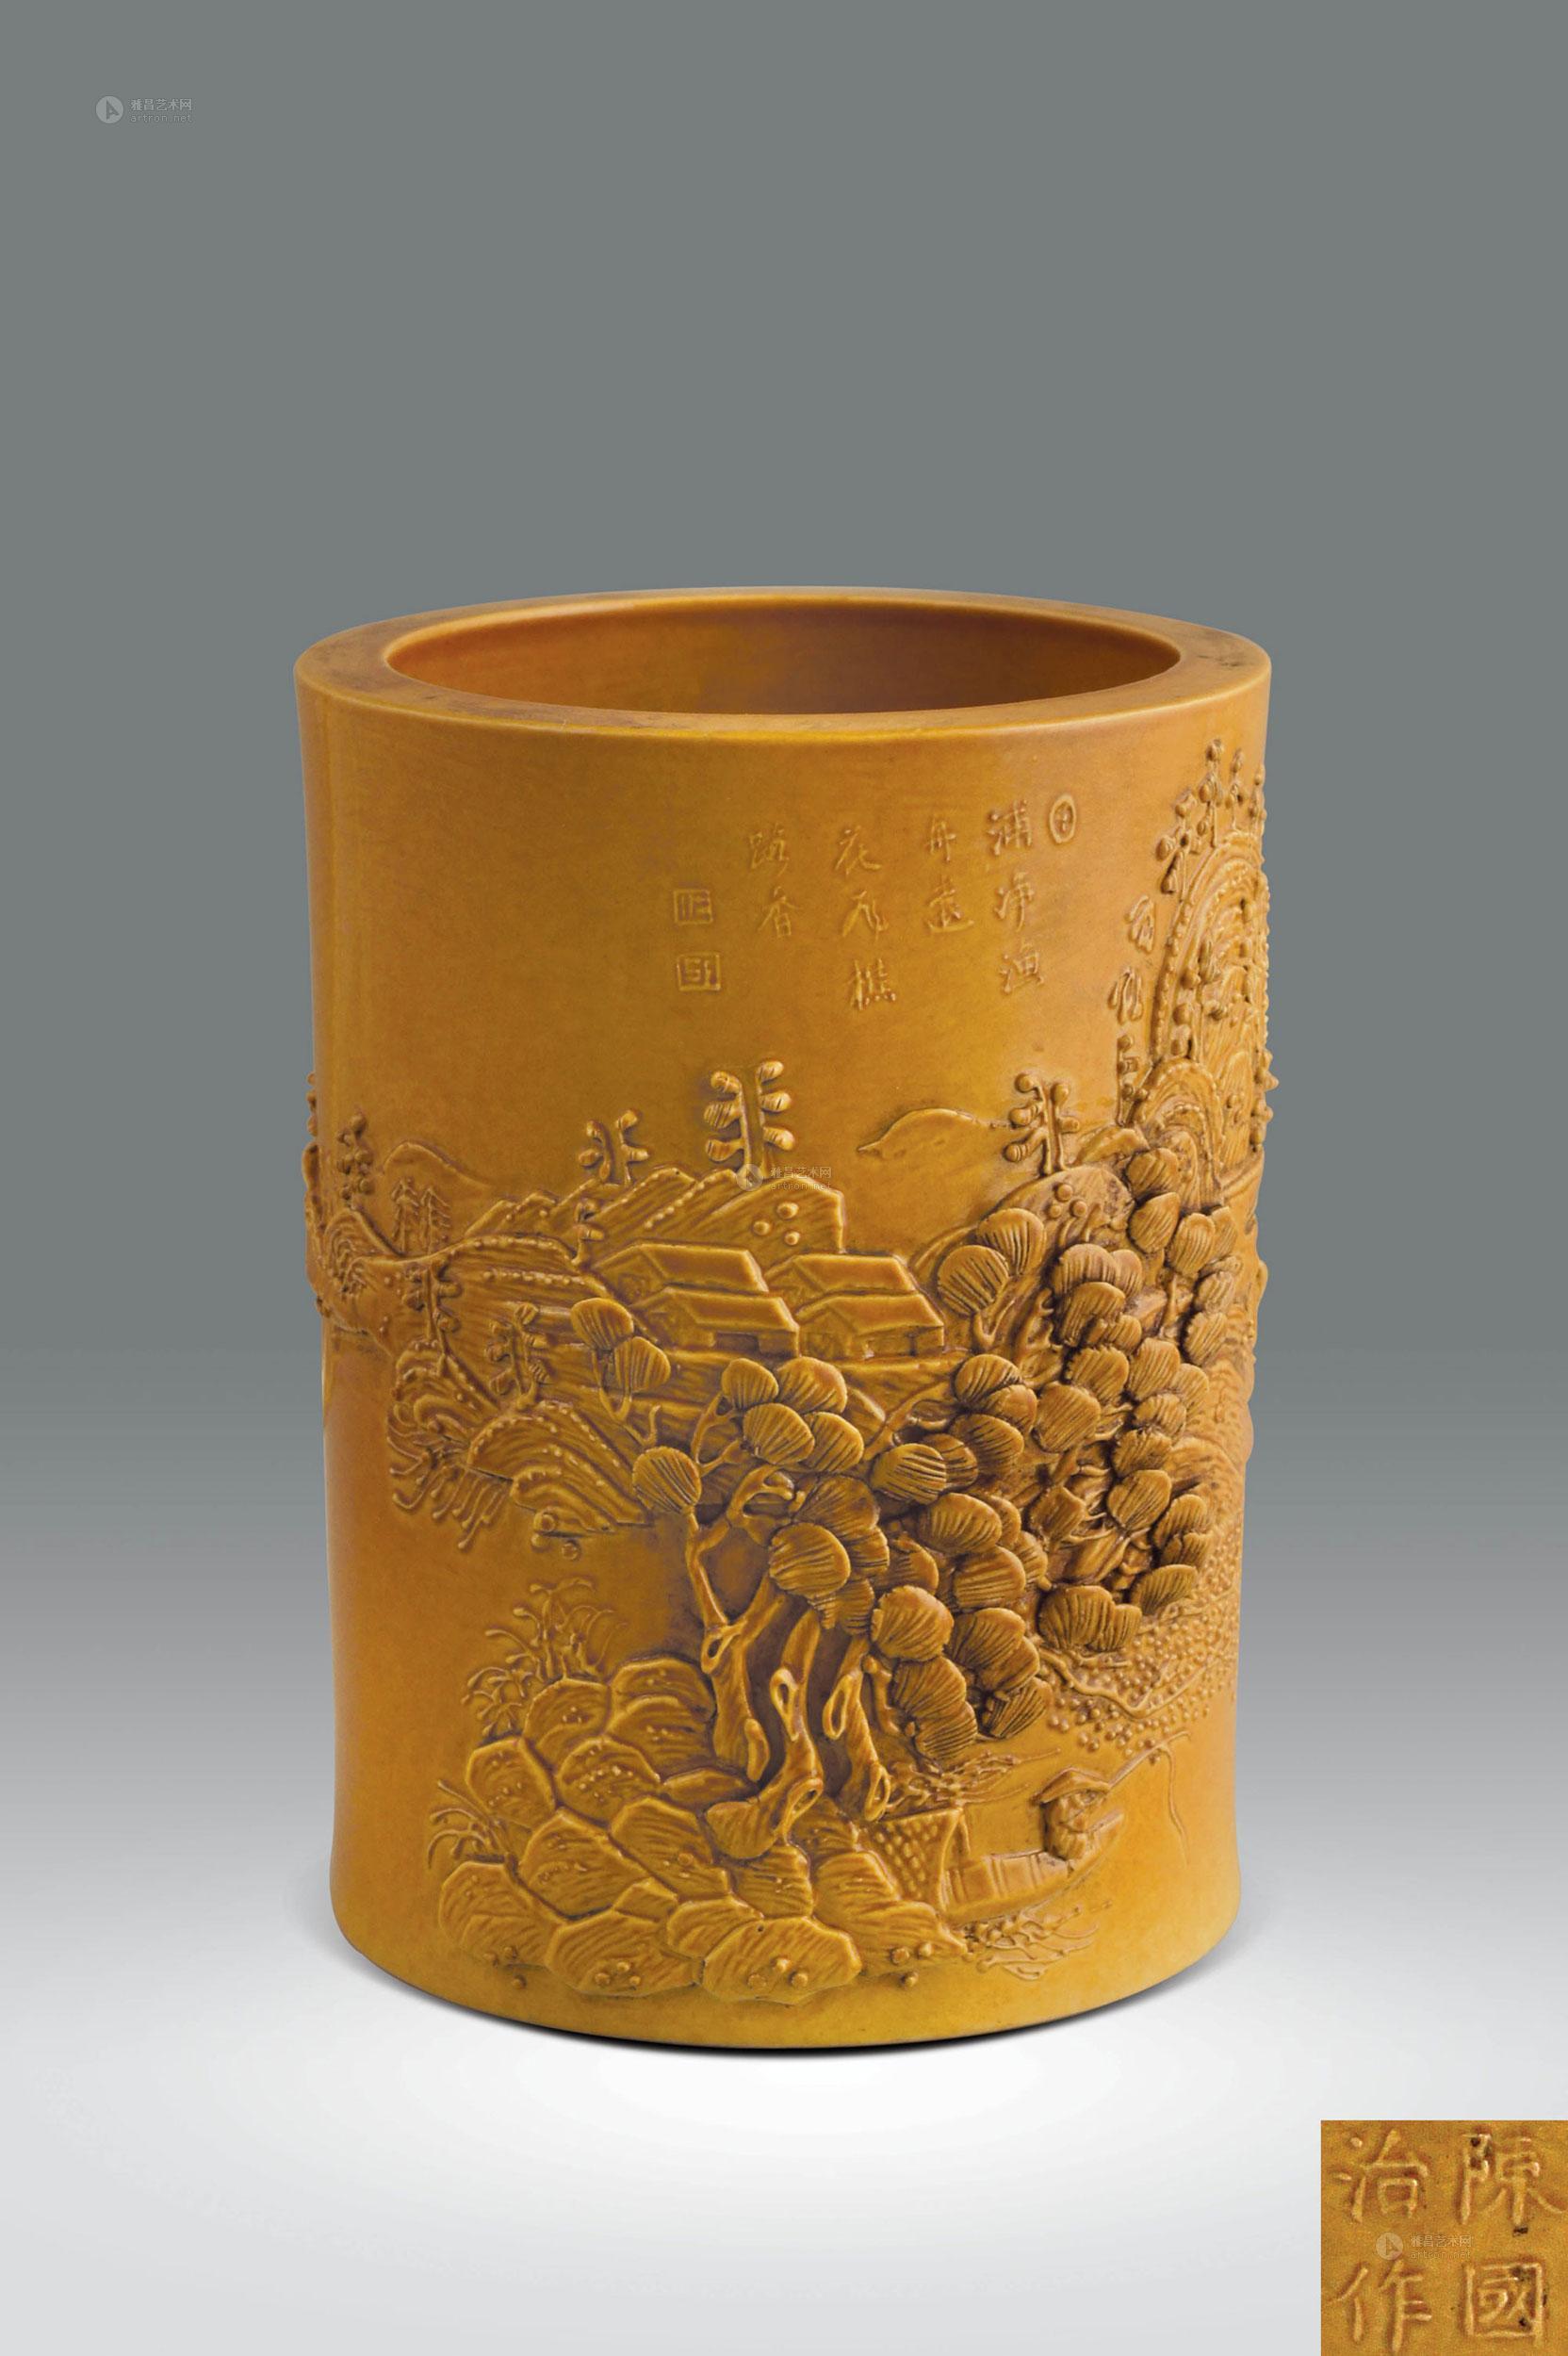 品名称陈国治制黄釉雕瓷山水纹笔筒拍品分类陶瓷